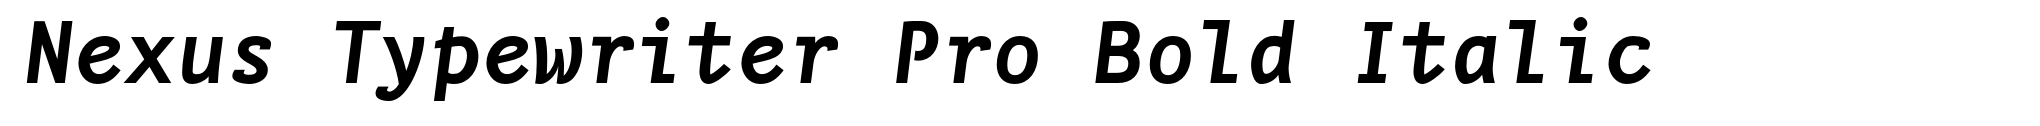 Nexus Typewriter Pro Bold Italic image